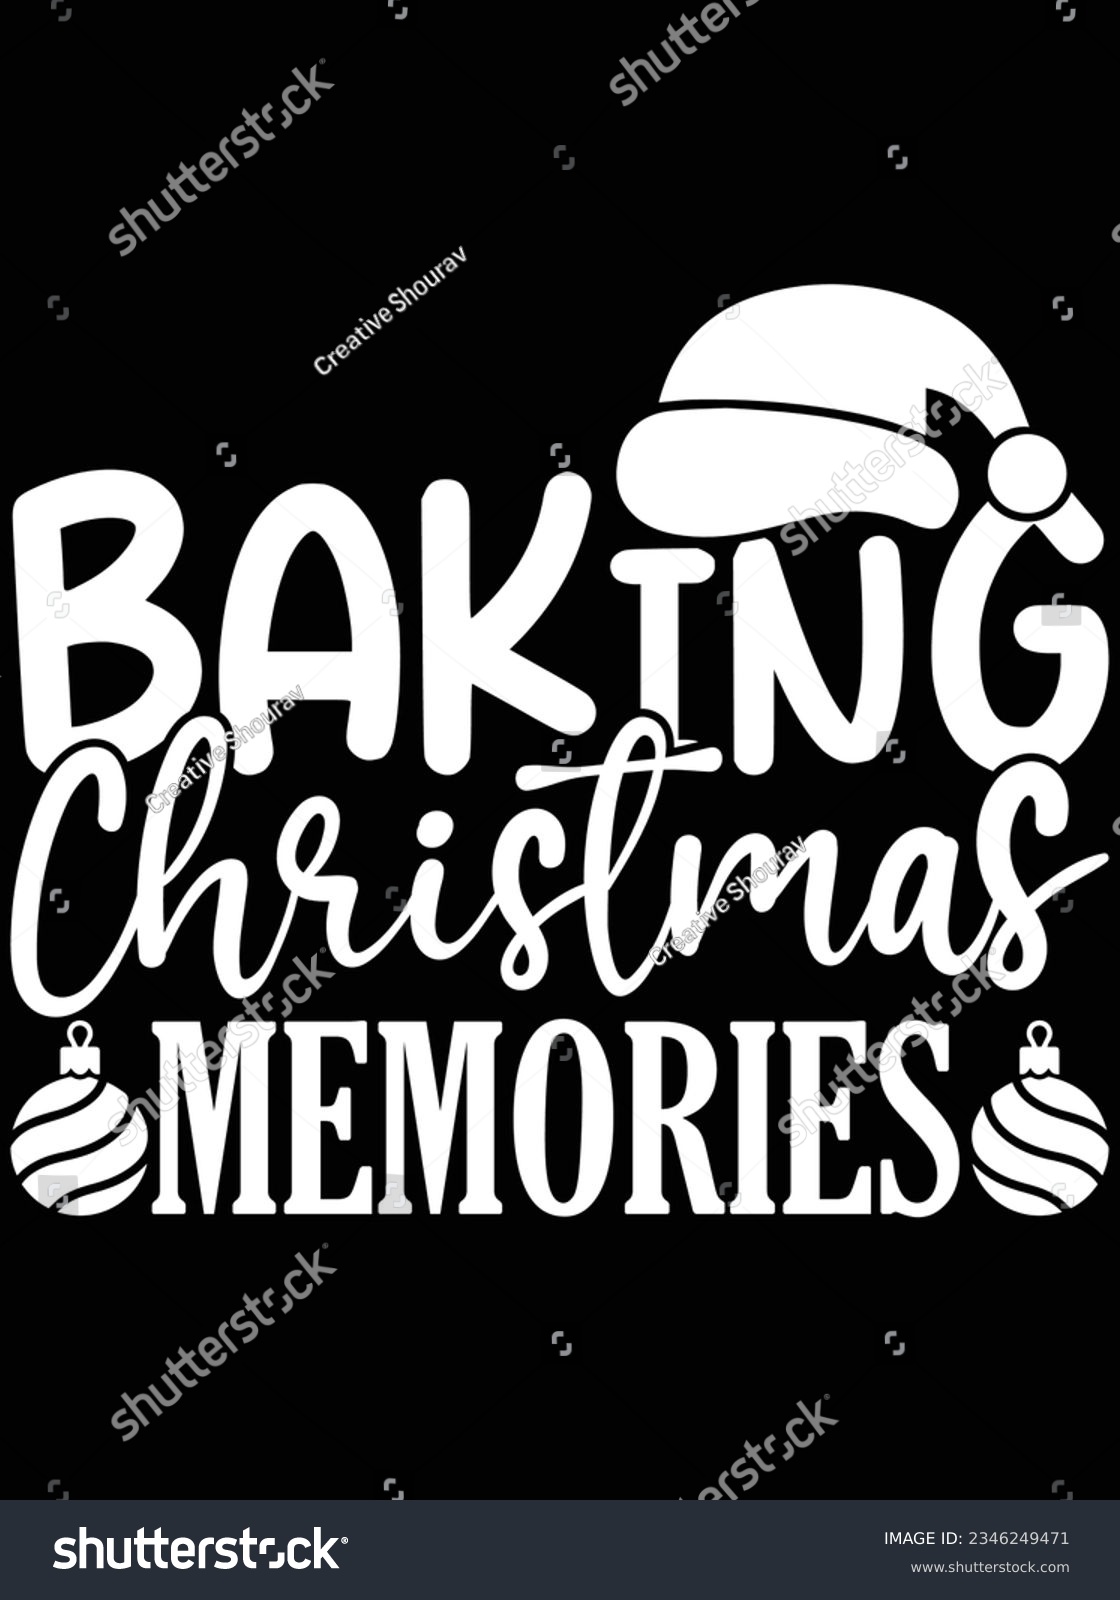 SVG of Baking Christmas memories vector art design, eps file. design file for t-shirt. SVG, EPS cuttable design file svg